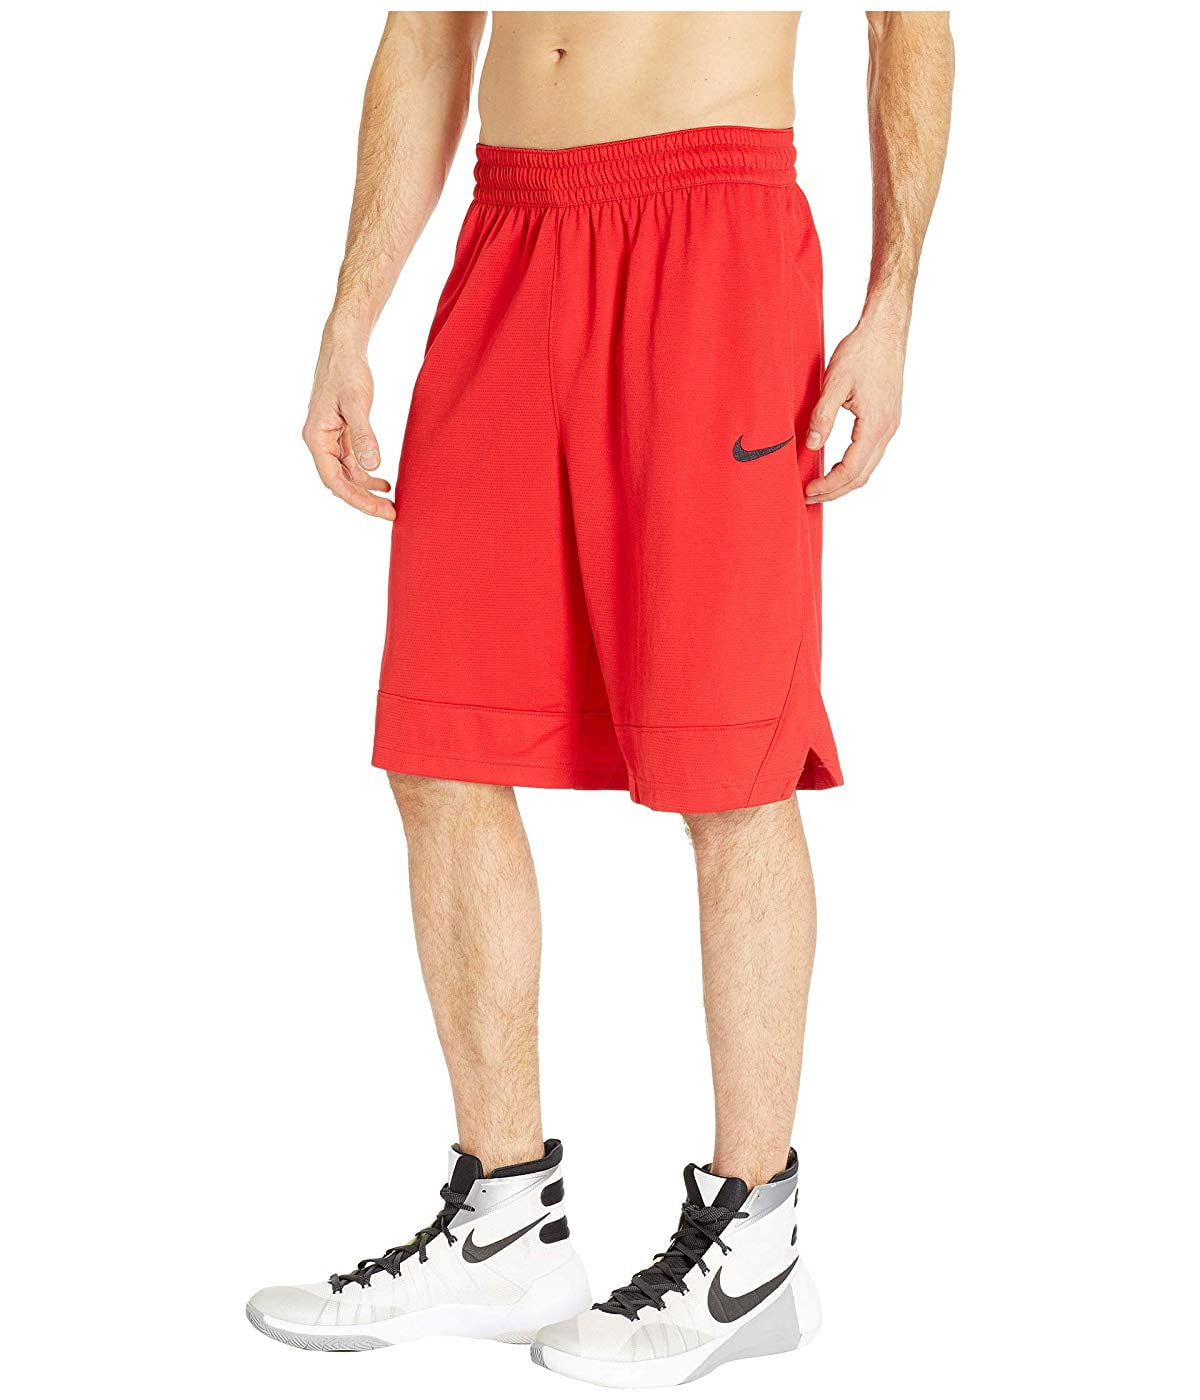 red nike shorts men's